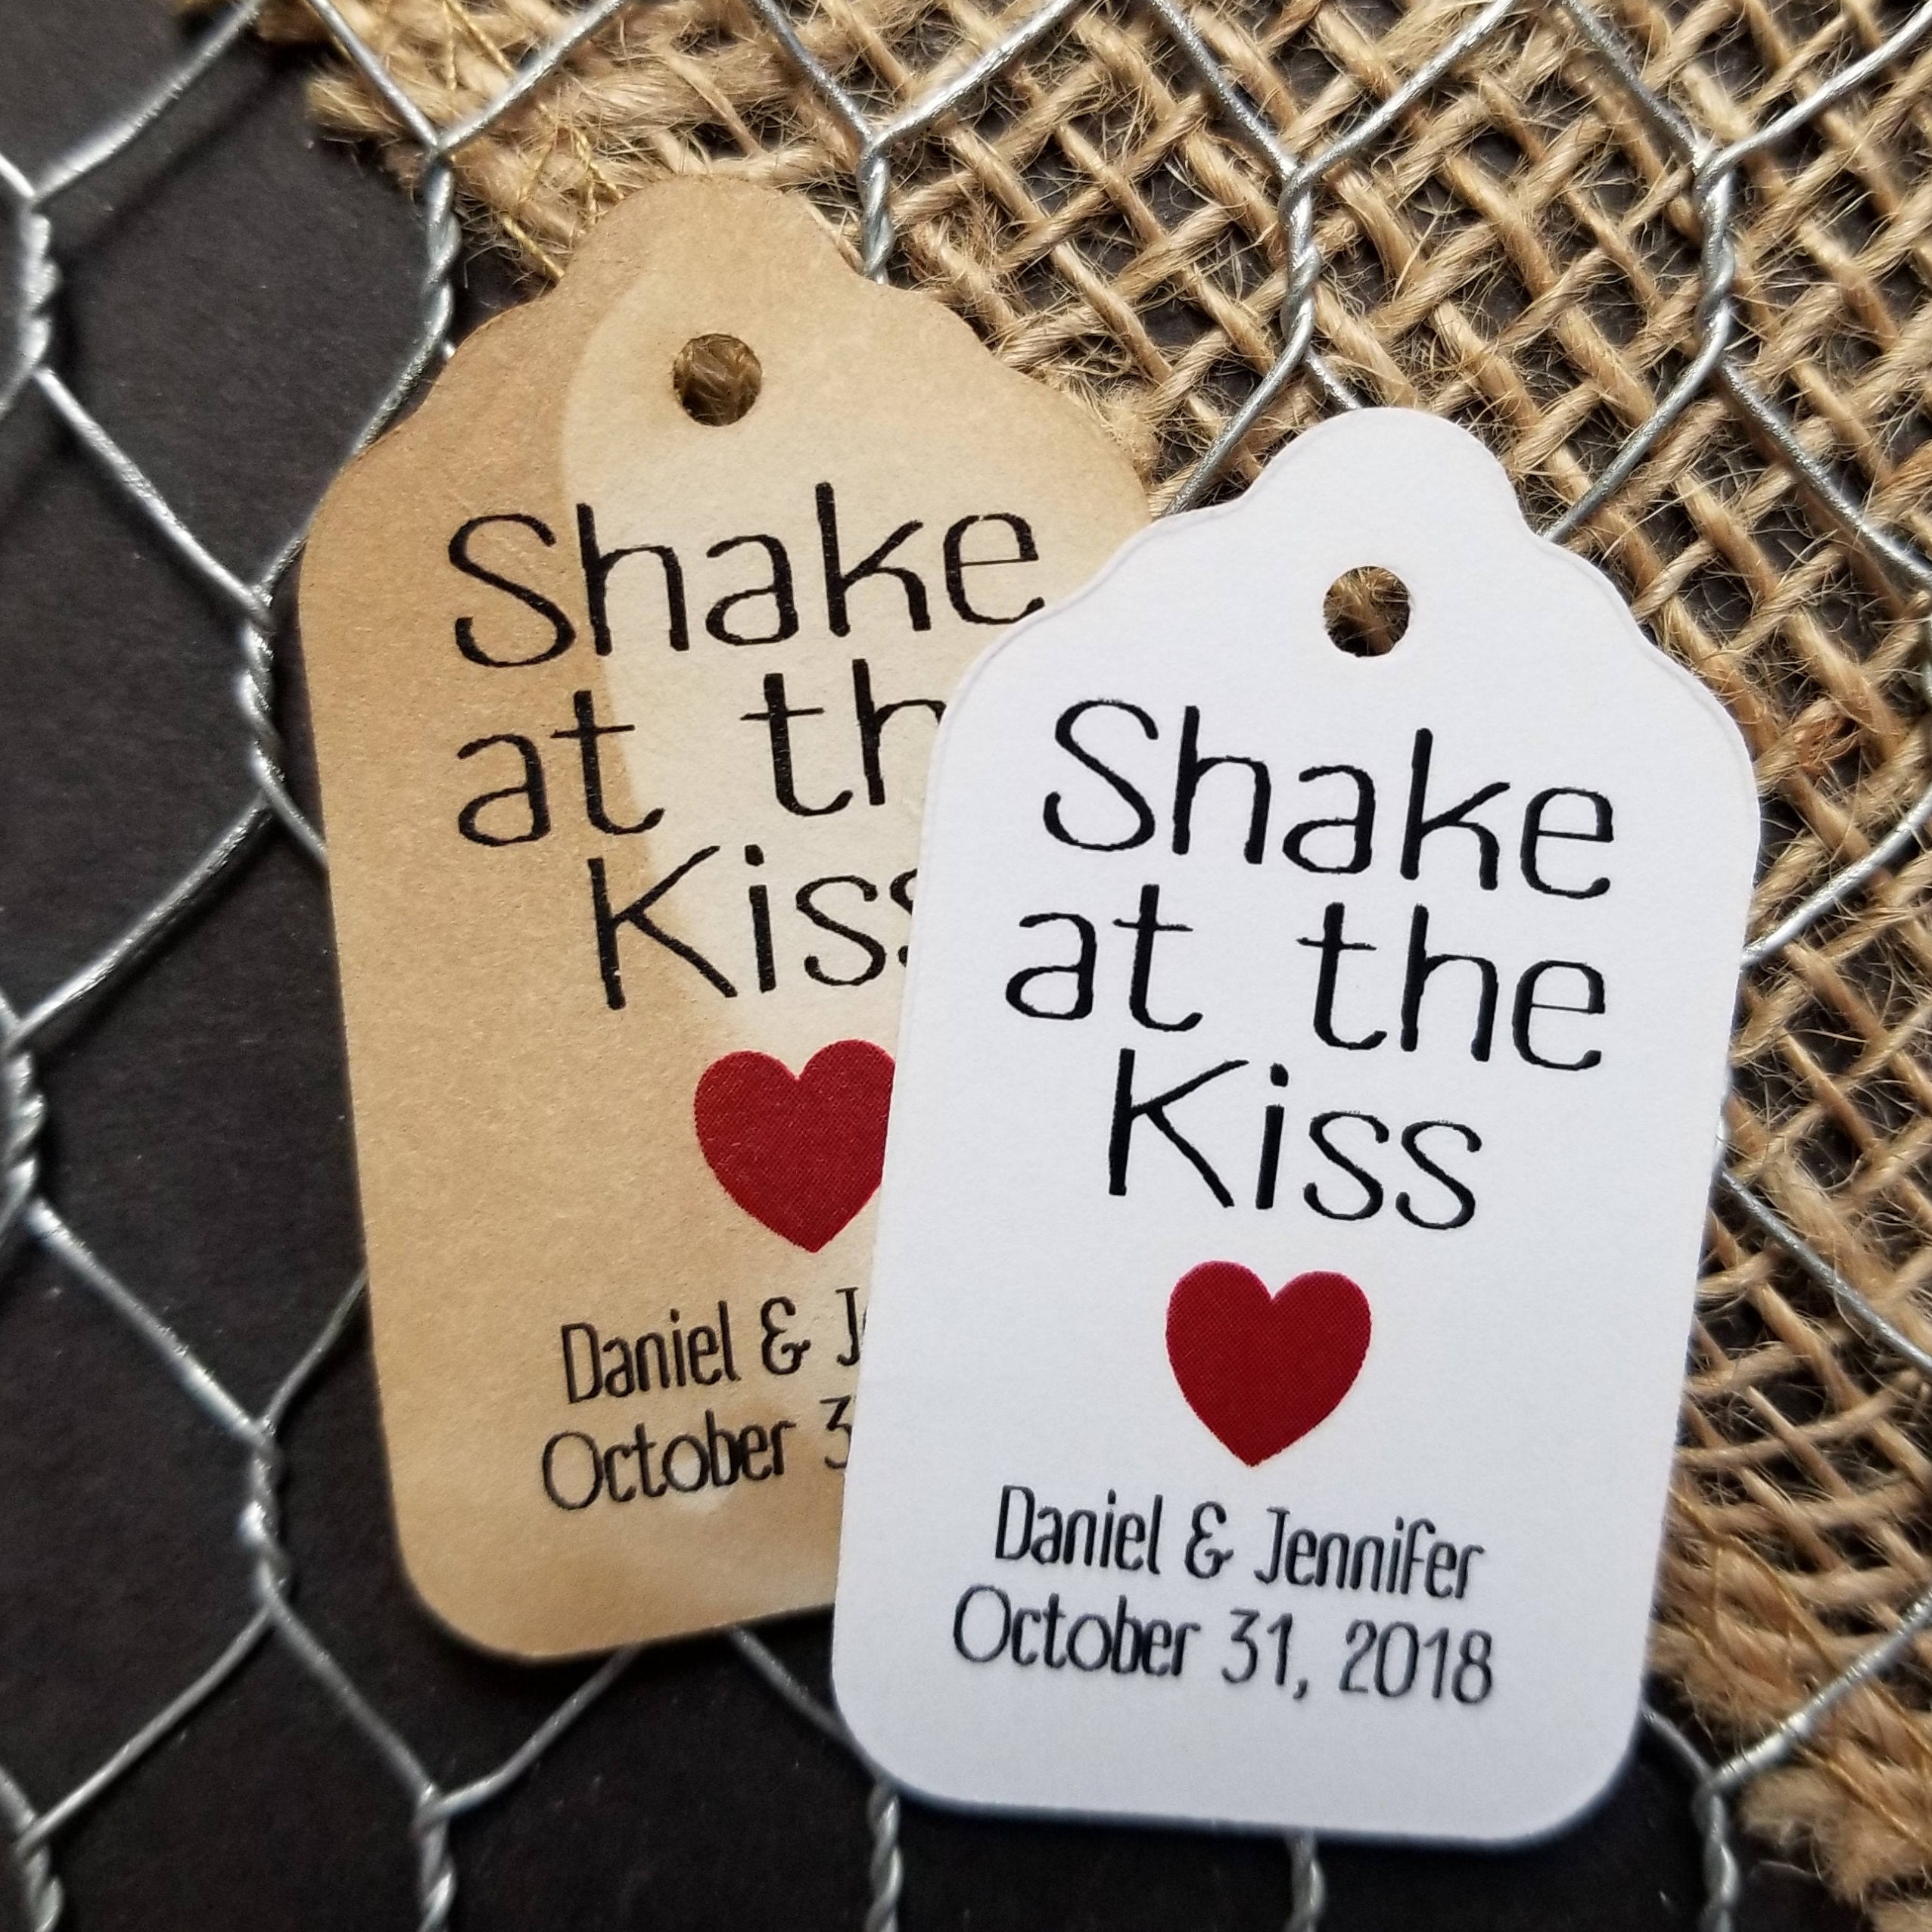 Shake at the Kiss Wedding Favor Tags Fun Font